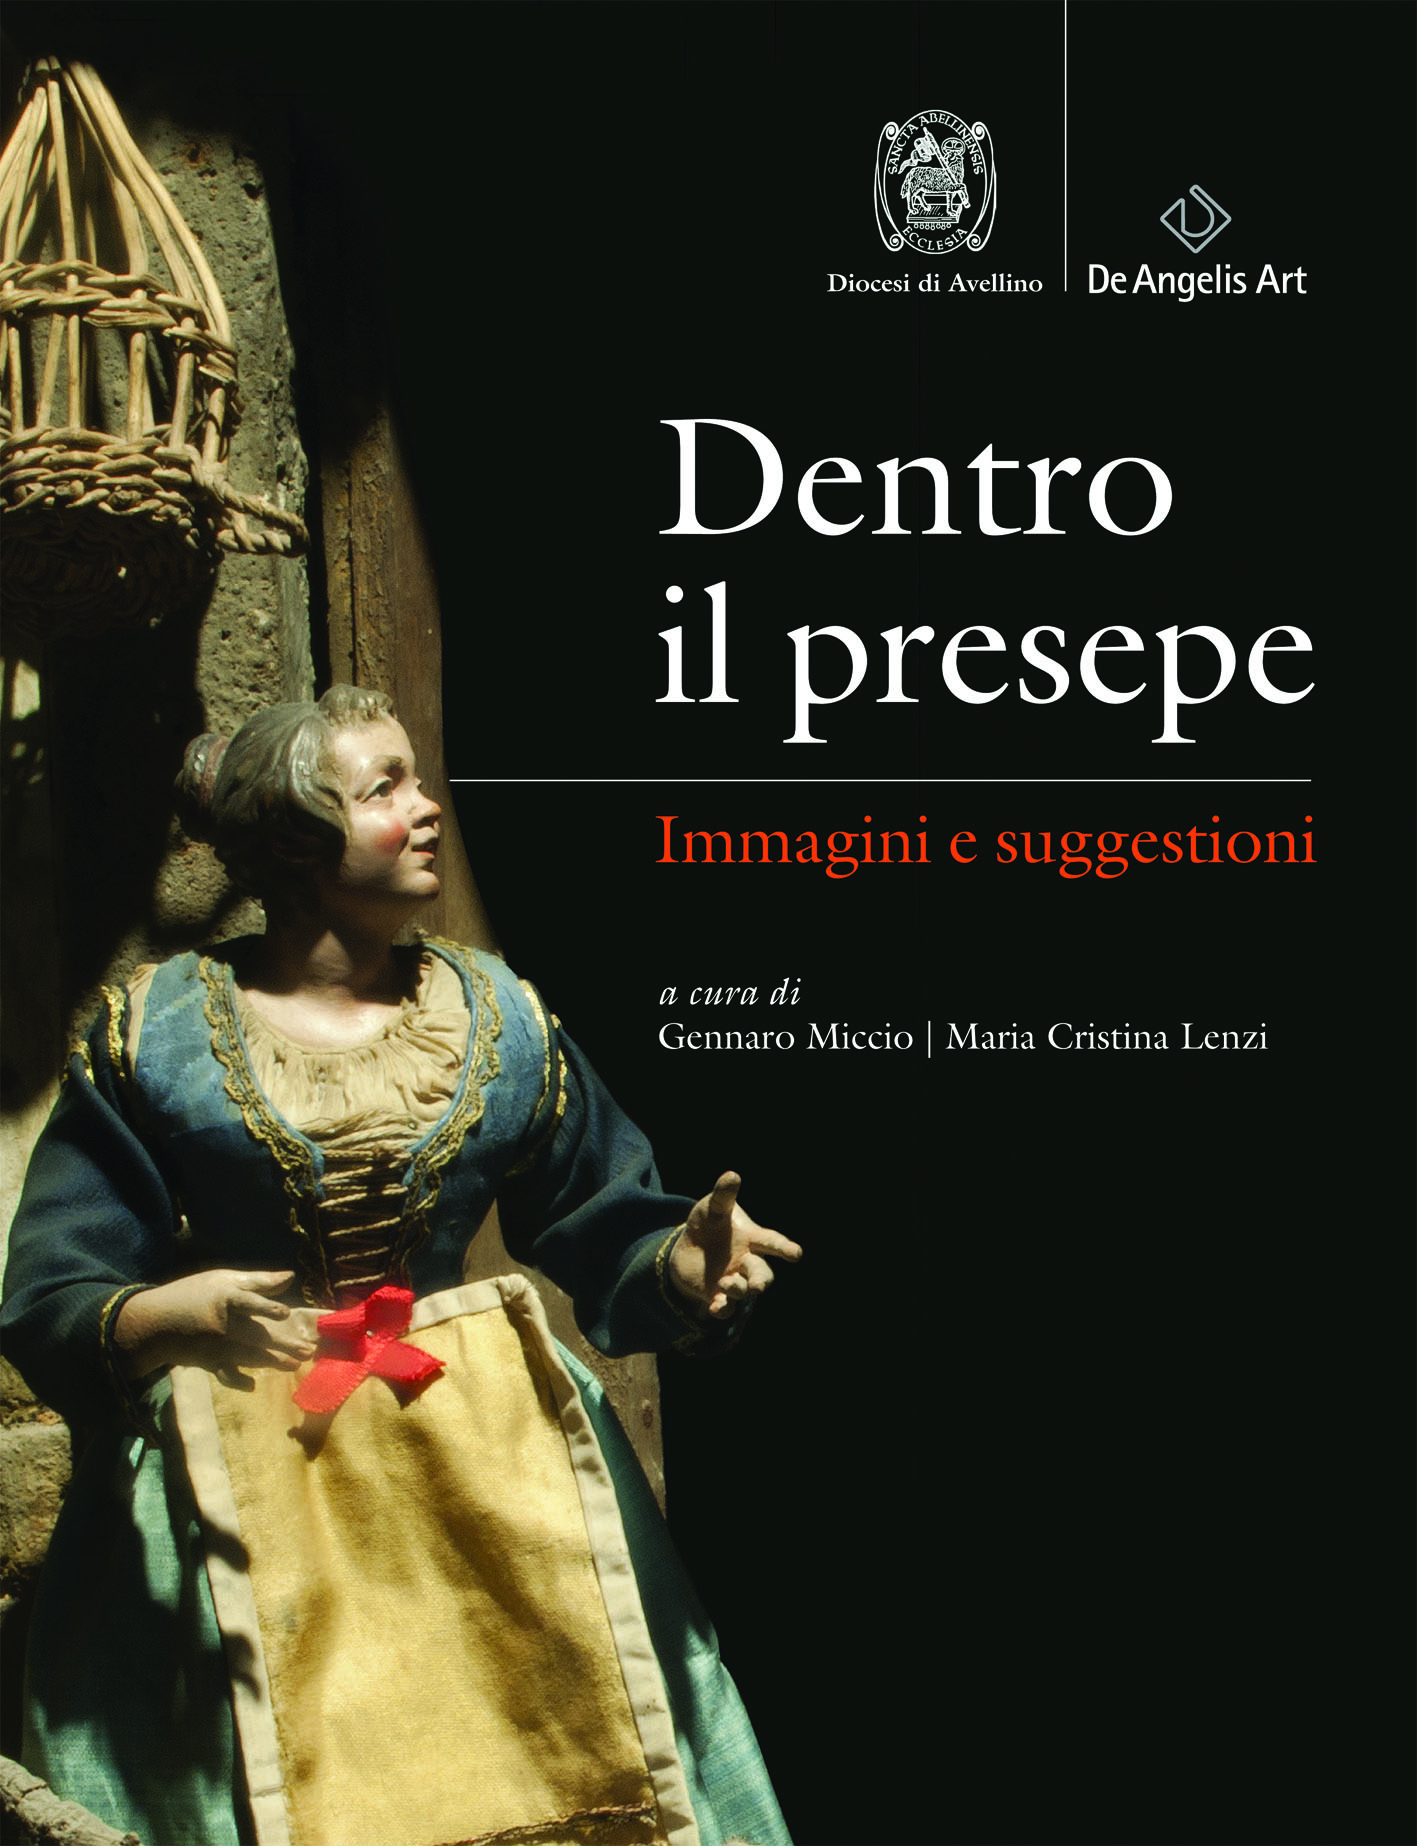 «Dentro il presepe. Immagini e suggestioni», la mostra nella Cripta del Duomo di Avellino